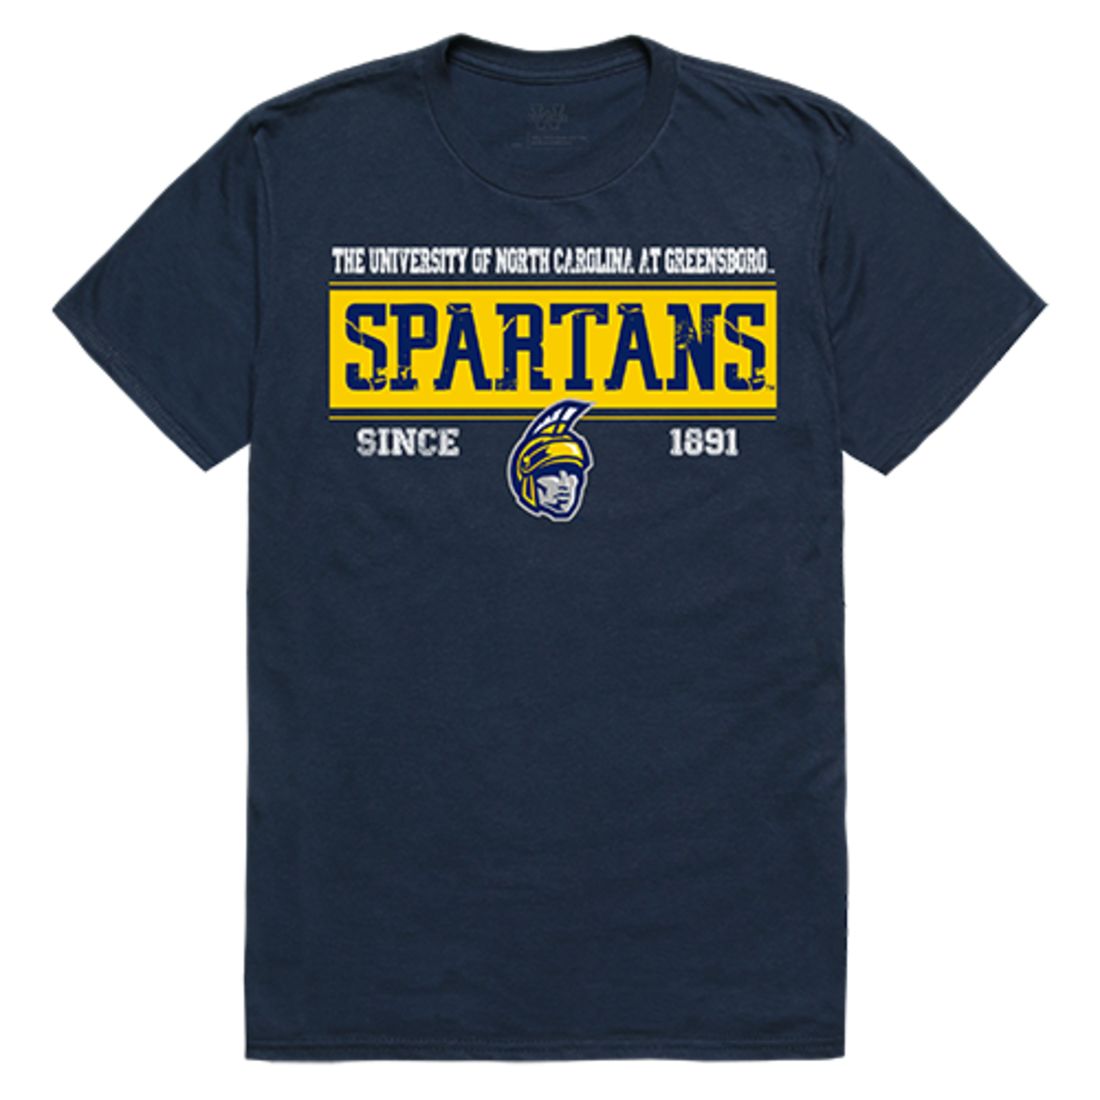 UNCG University of North Carolina at Greensboro Spartans NCAA Established Tees T-Shirt Navy-Campus-Wardrobe